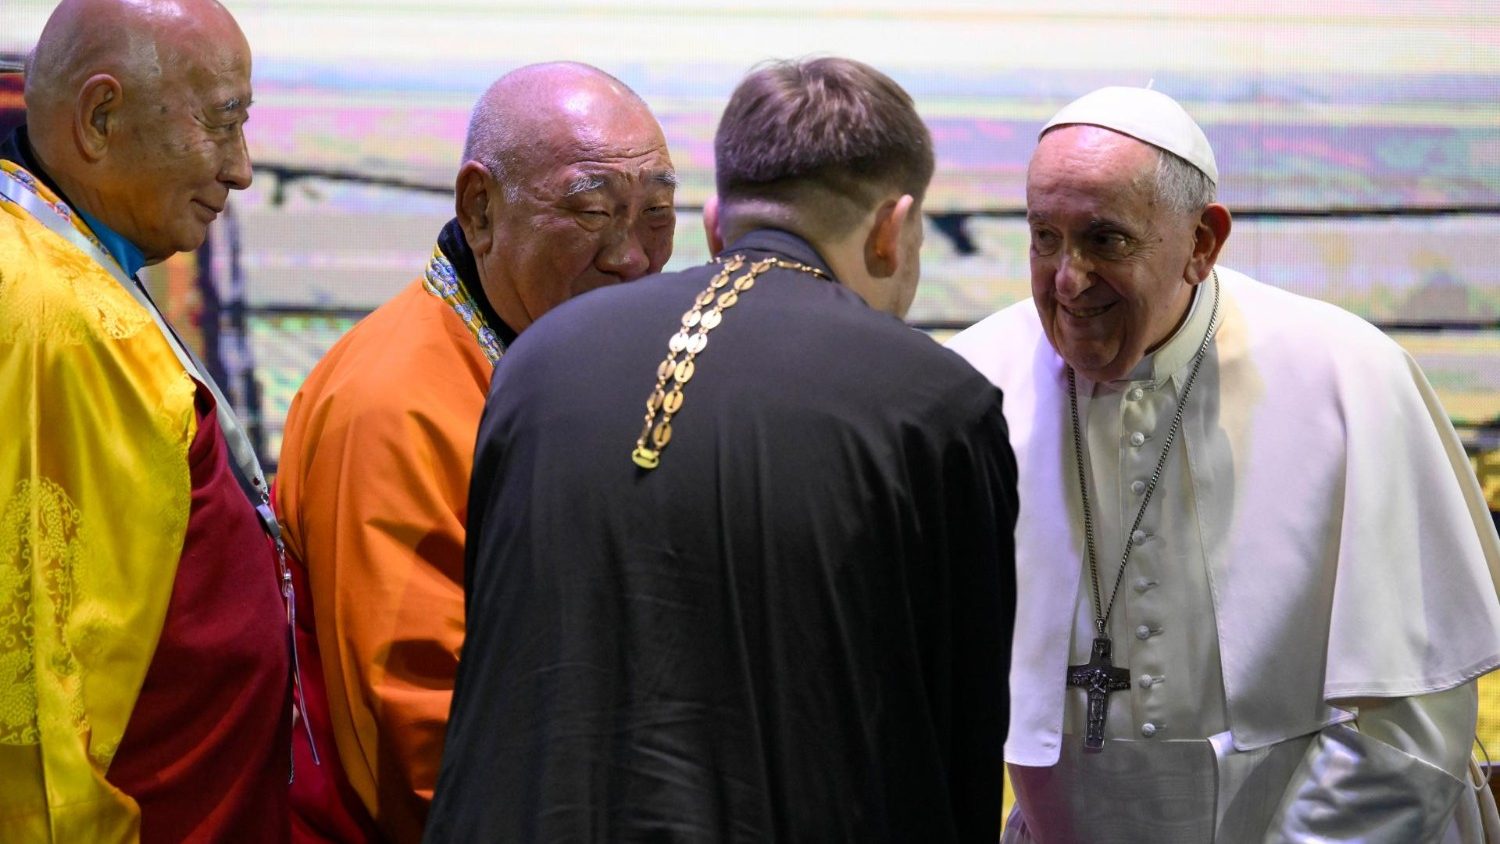 Francisco en Mongolia promueve la armonía y la libertad religiosa - Vatican  News